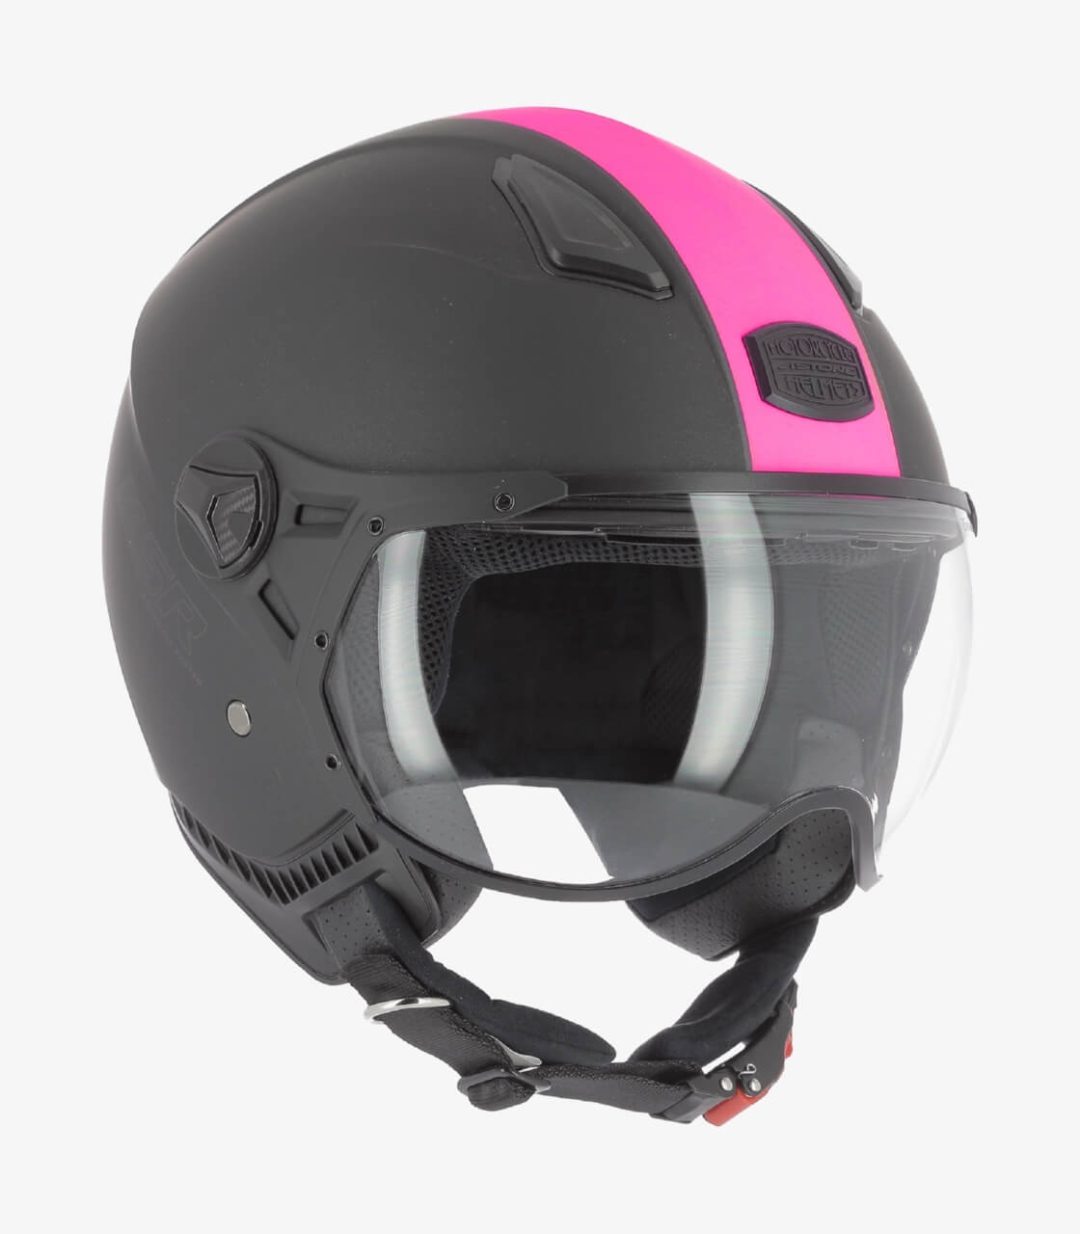 astone-ksr-2-matt-black-pink-open-face-helmet-ksr2g-mbp (2)